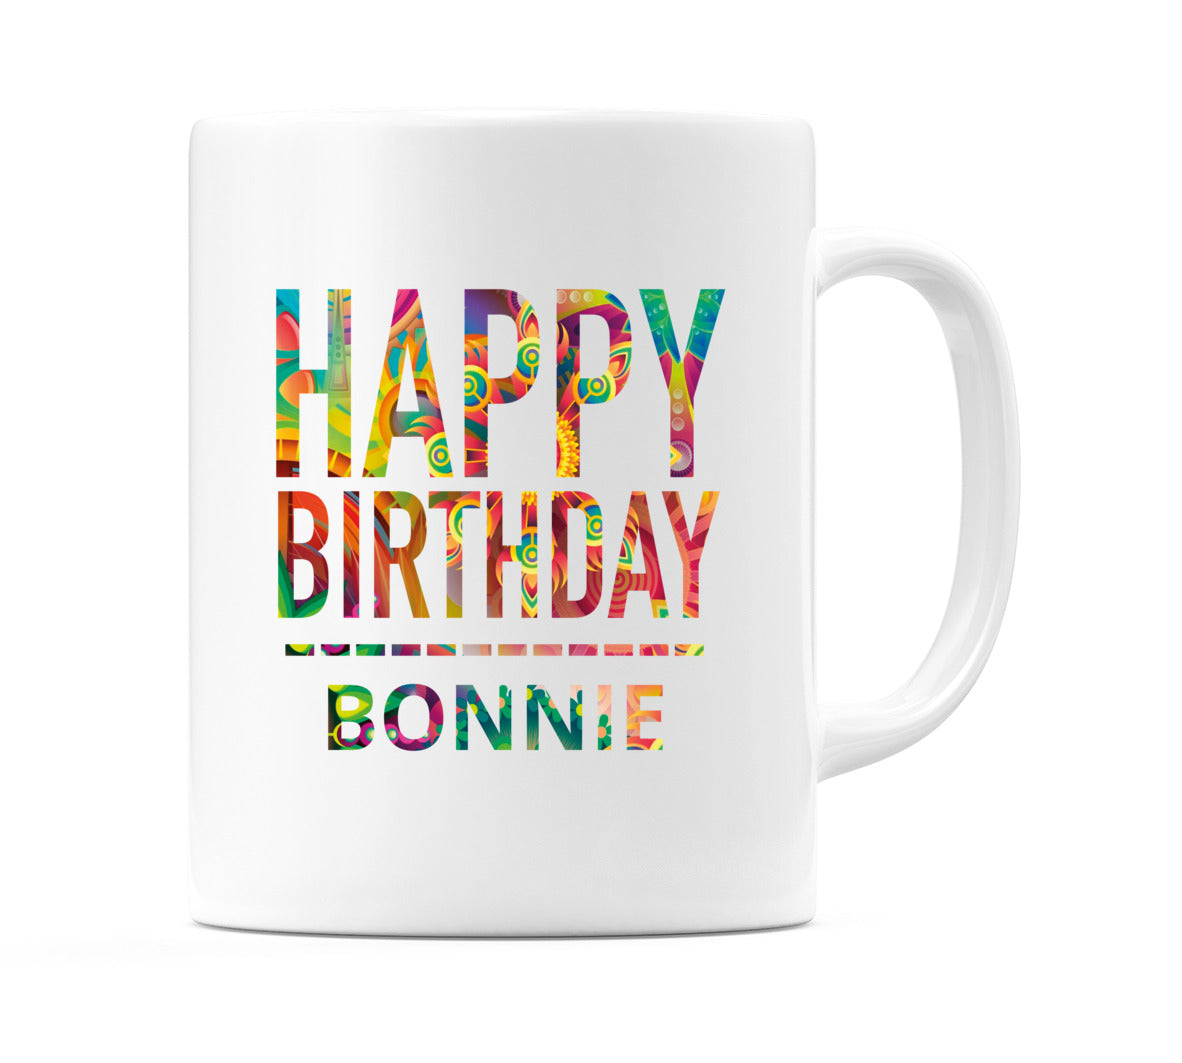 Happy Birthday Bonnie (Tie Dye Effect) Mug Cup by WeDoMugs